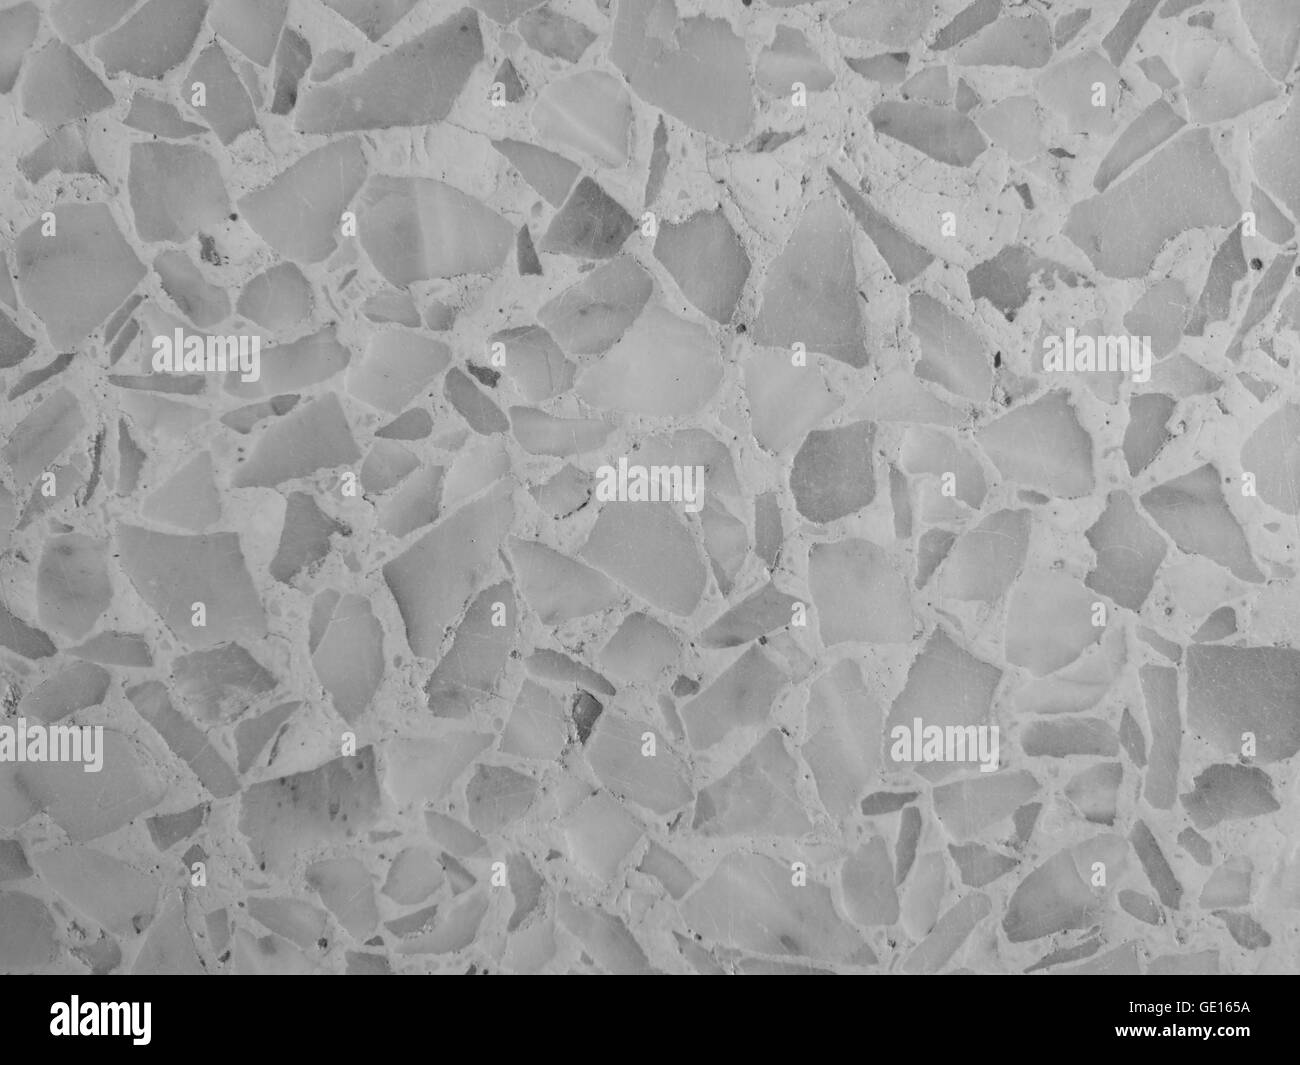 terrazzo floor background/texture in monochrome Stock Photo